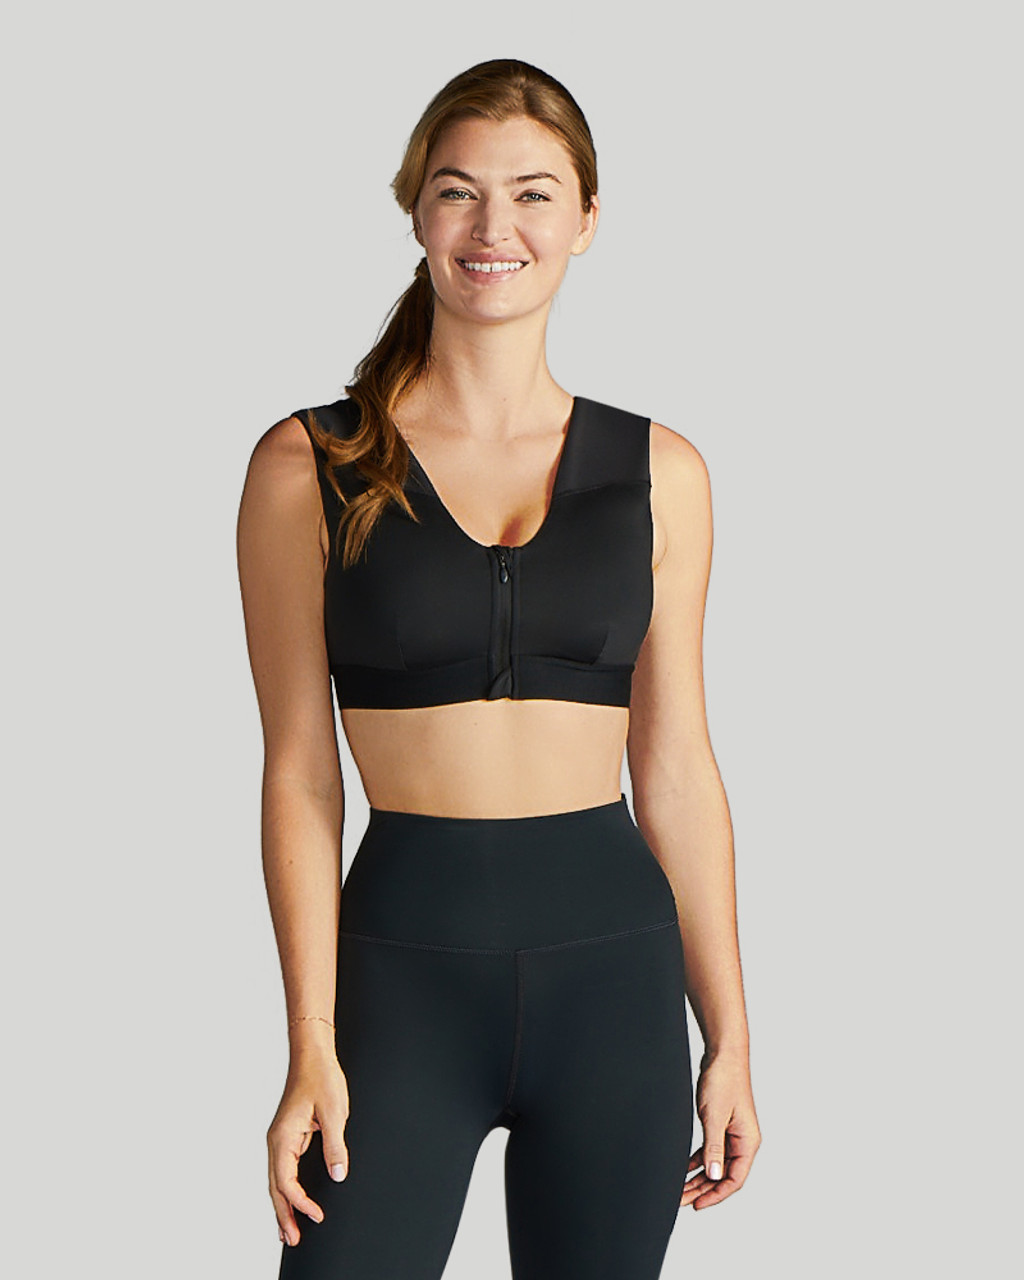 High Support Zipper Sports Bra for Women Workout Yoga Bra